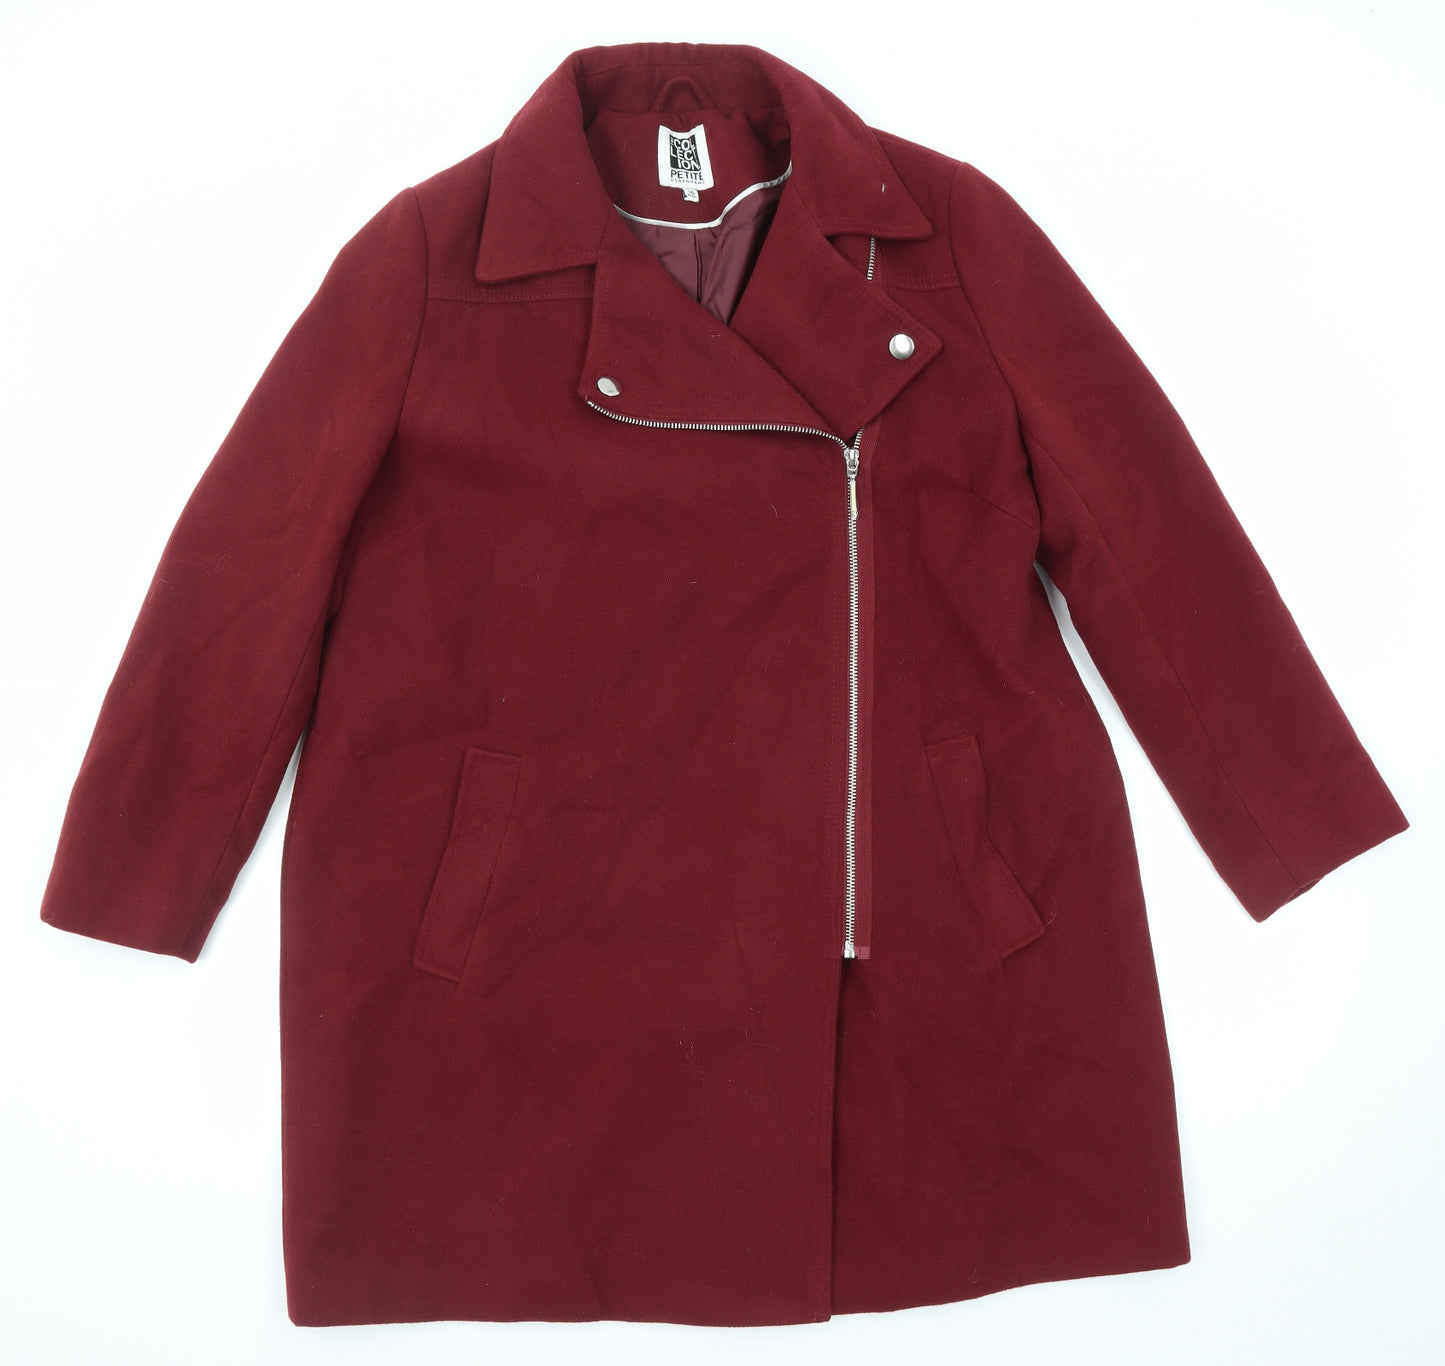 Debenhams Womens Red Overcoat Coat Size 16 Zip